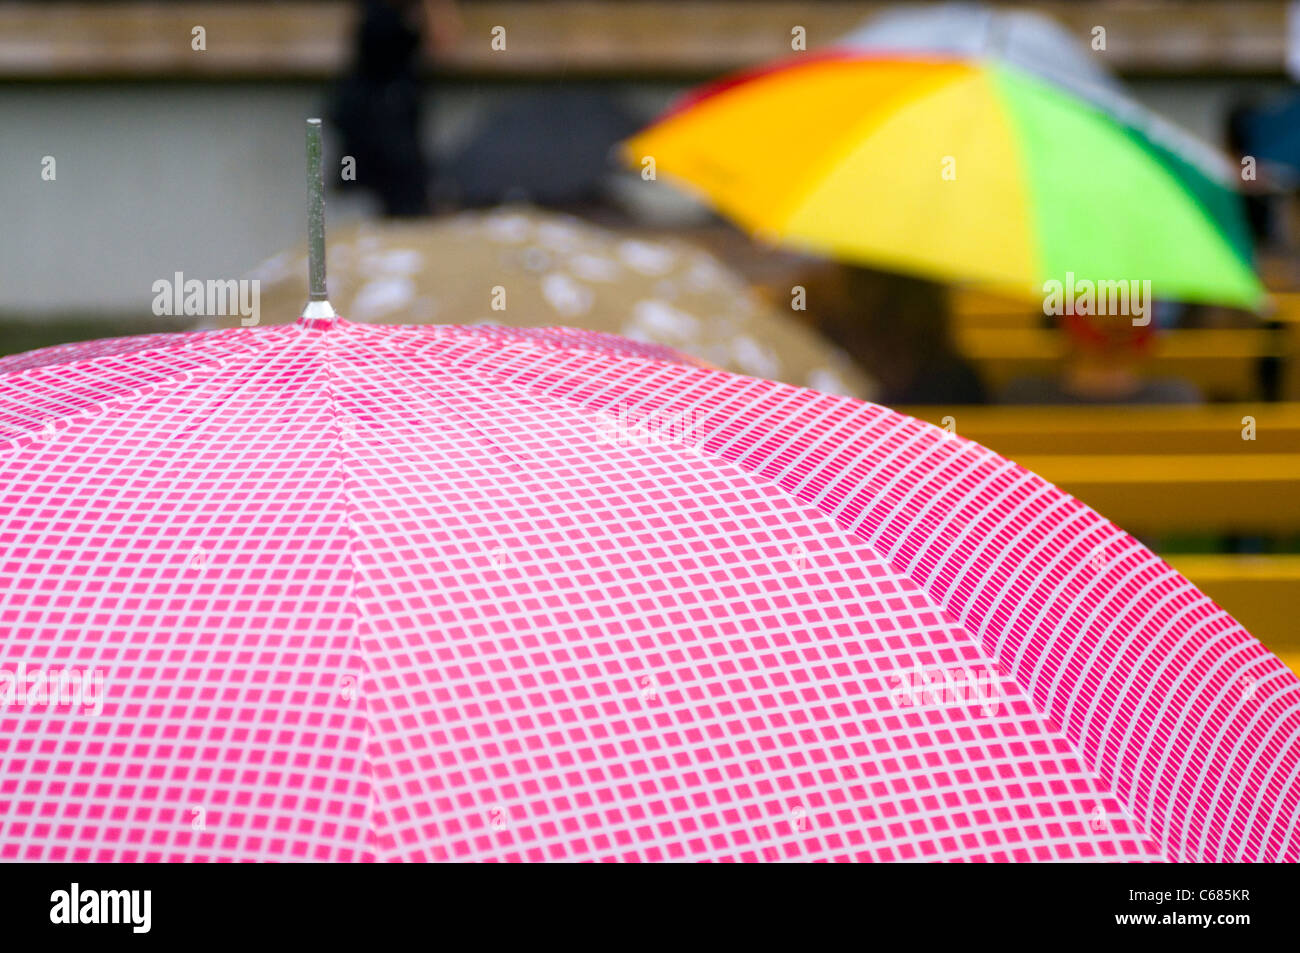 Regenschirme Schirm Regenschirm Regen Regen Nassen Wetter Dusche Duschen Feuchten Spucken Wasser Sommer Feucht Regnerische Niederschlag Konv Stockfotografie Alamy